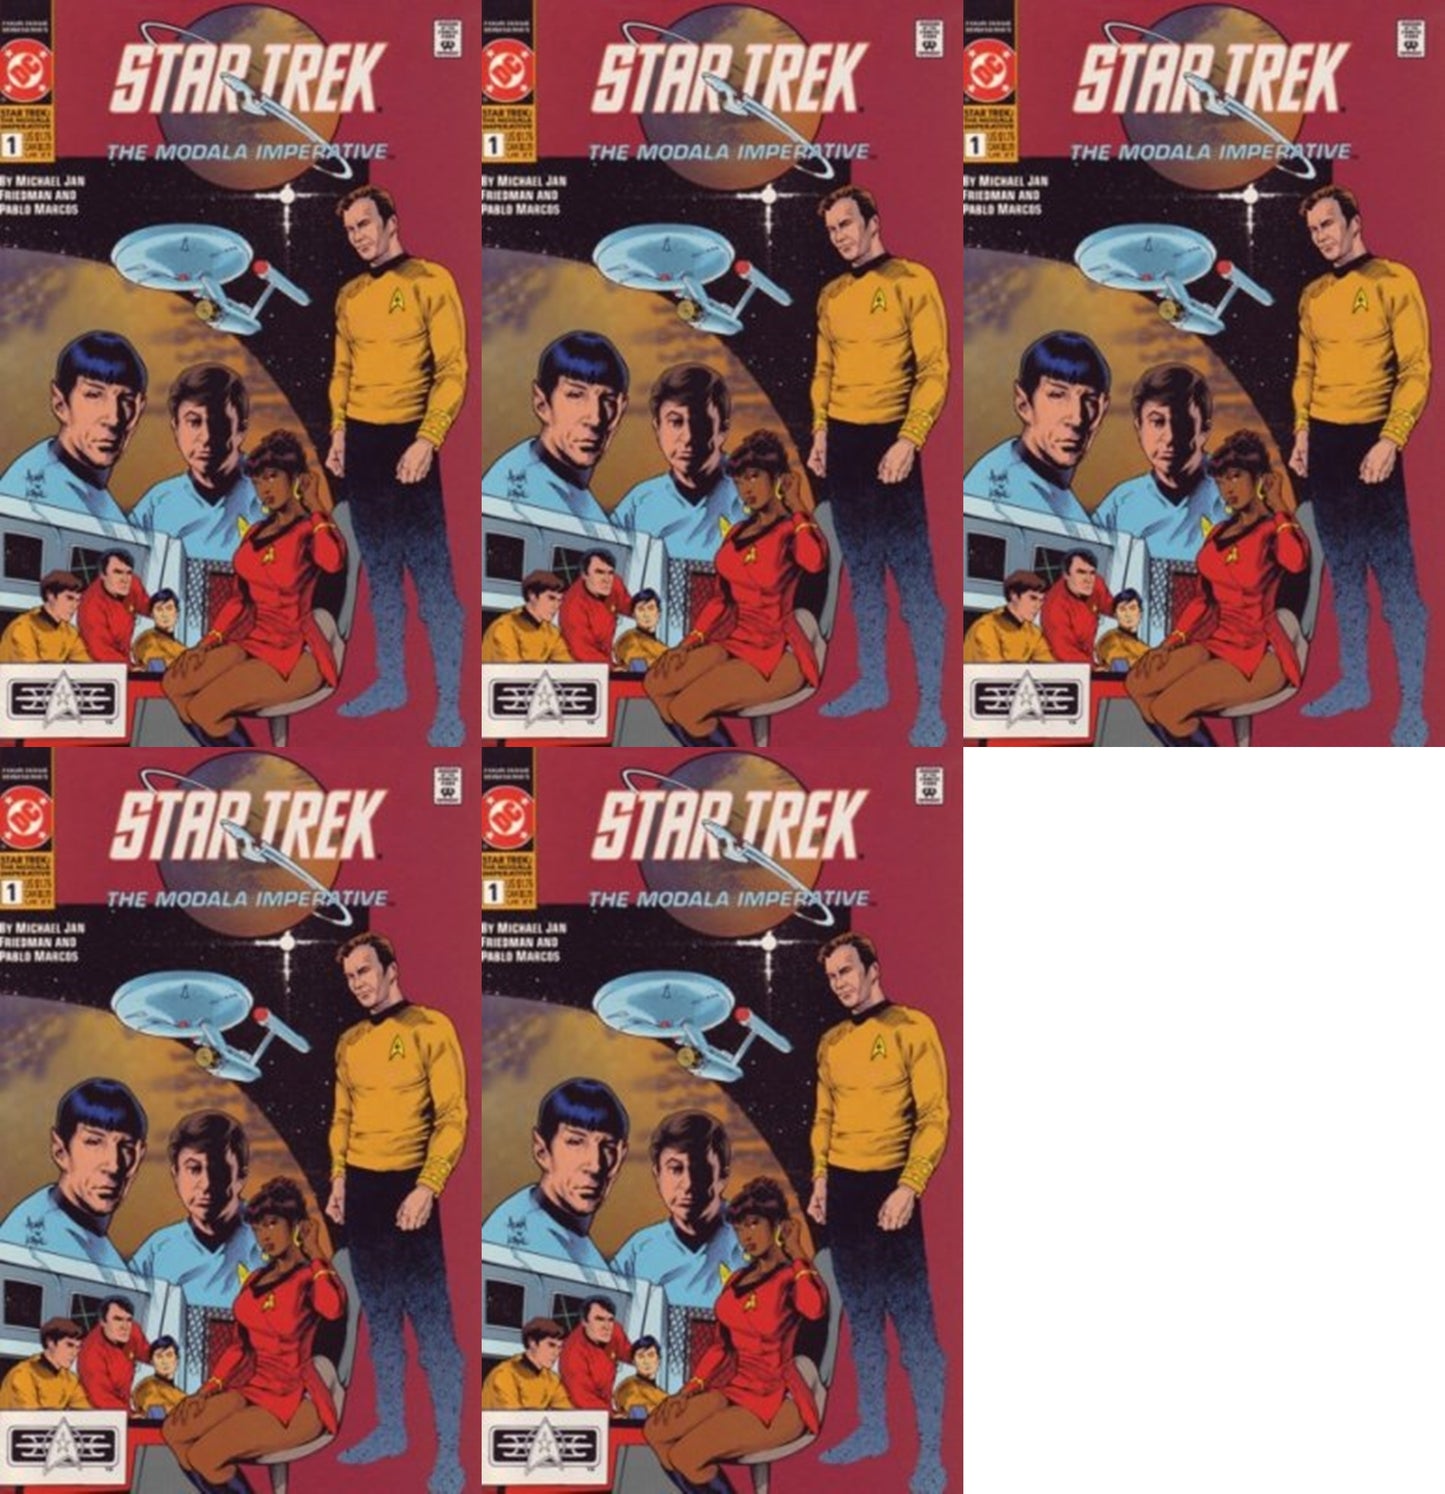 Star Trek: The Modala Imperative #1 (1991) DC Comics - 5 Comics